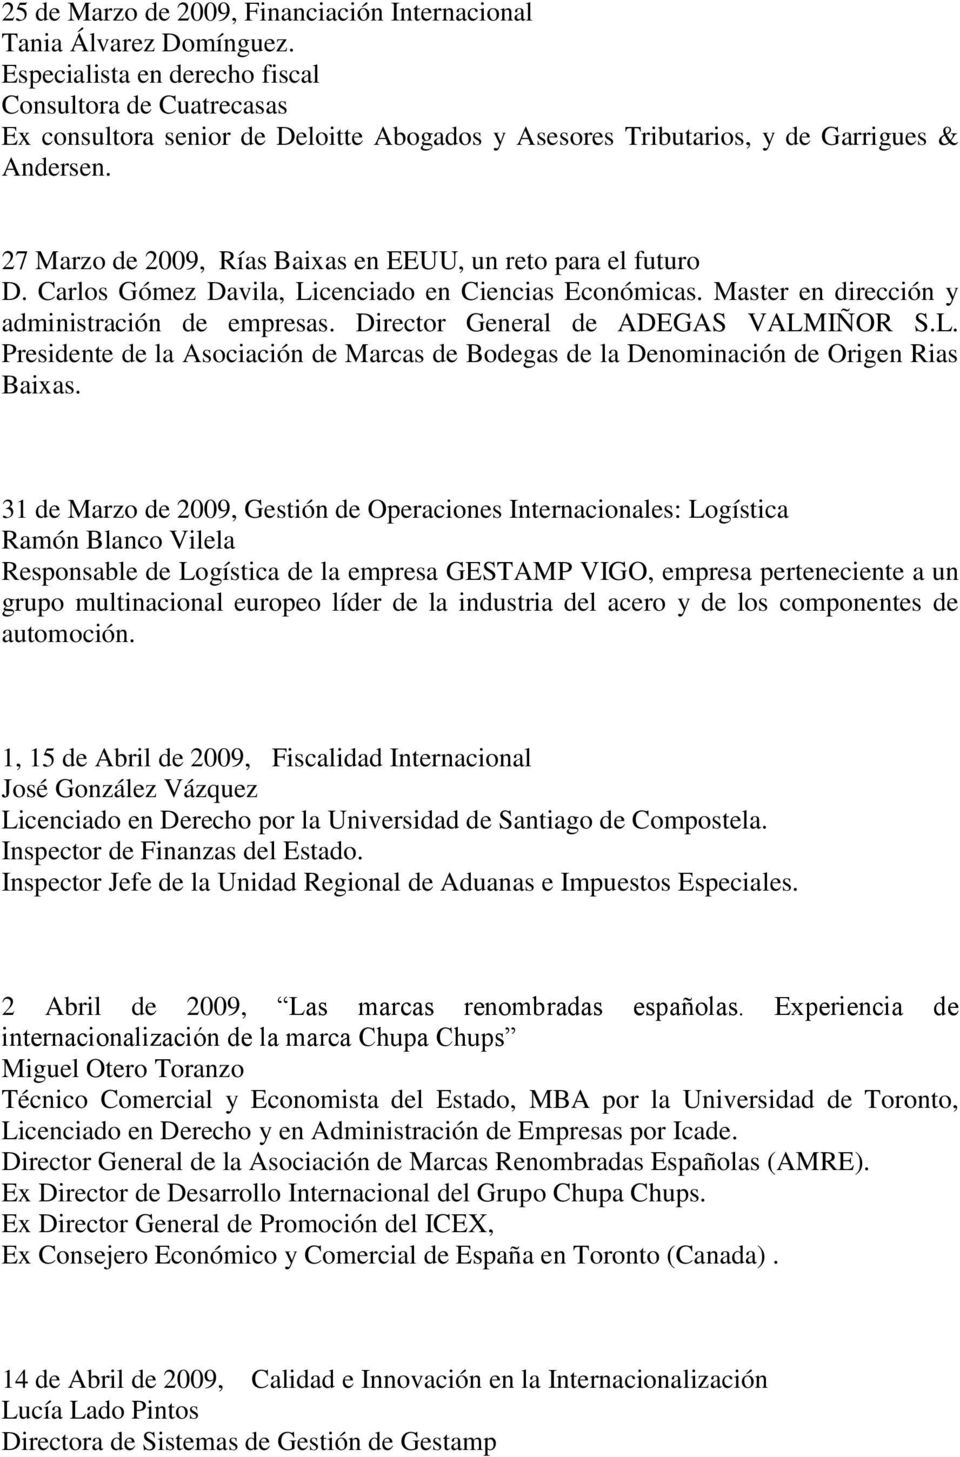 27 Marzo de 2009, Rías Baixas en EEUU, un reto para el futuro D. Carlos Gómez Davila, Licenciado en Ciencias Económicas. Master en dirección y administración de empresas.